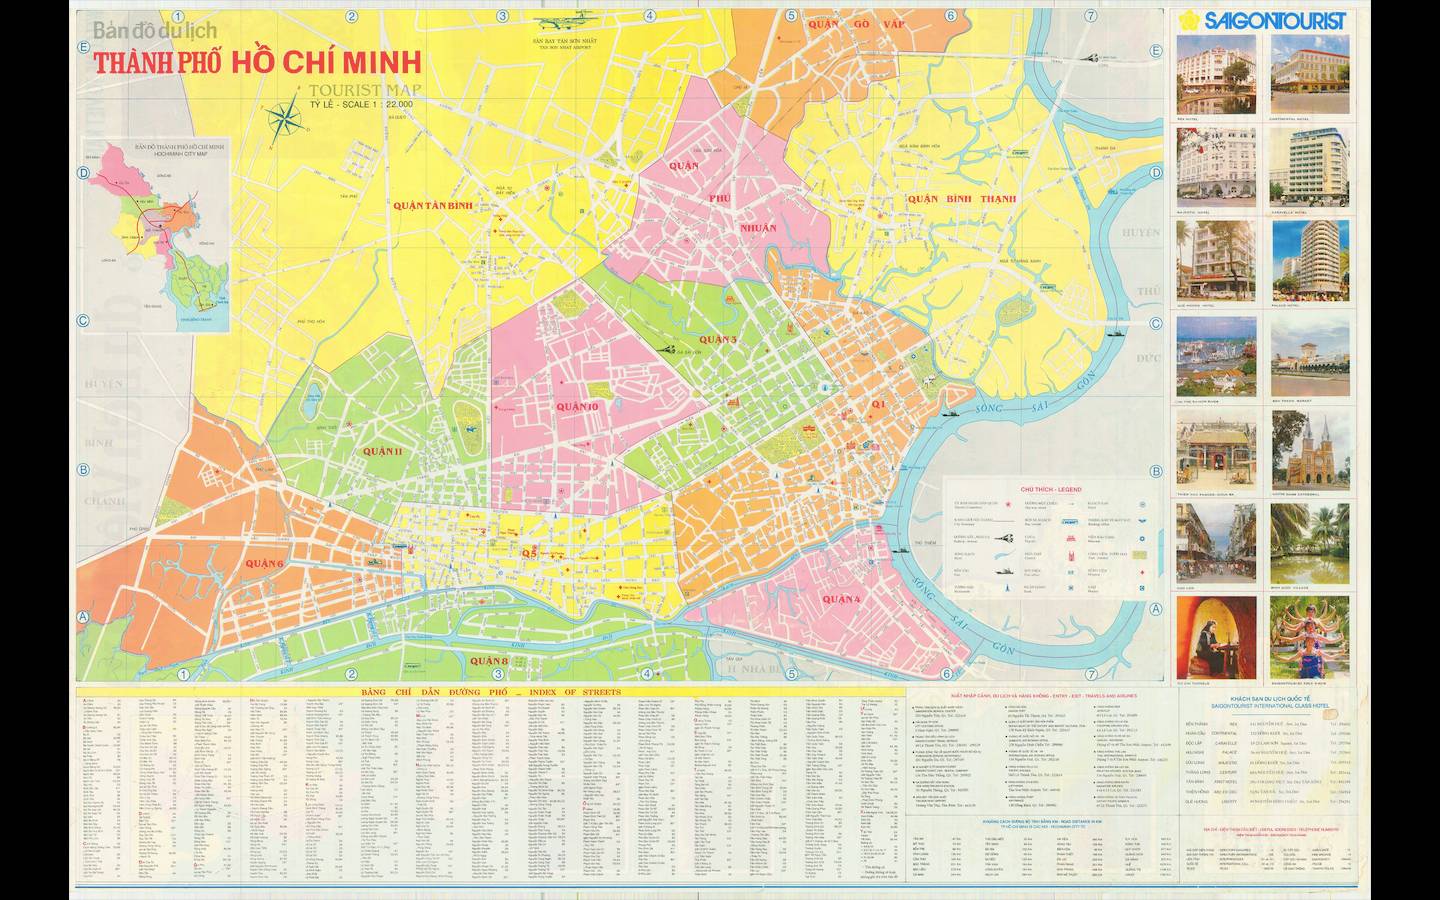 Khám phá những con đường mới và hiện đại tại Tp. Hồ Chí Minh năm